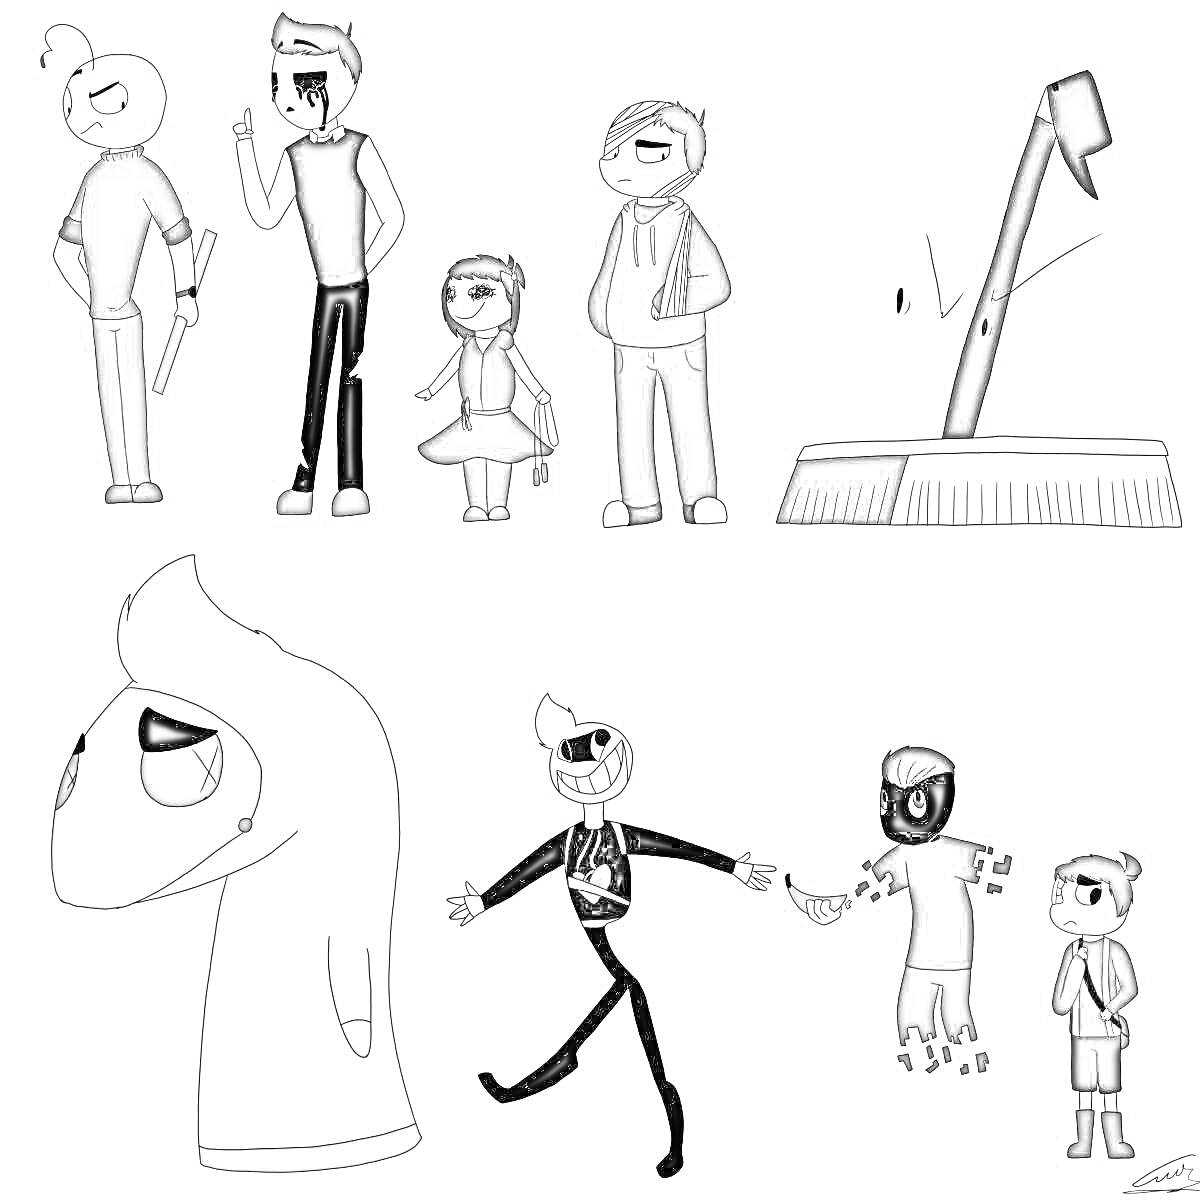 Раскраска Персонажи из игры Балди в различных сценах: двое больших персонажей и маленький персонаж в первом ряду, персонаж с веником справа, персонаж с капюшоном, веселый персонаж и два героя рядом